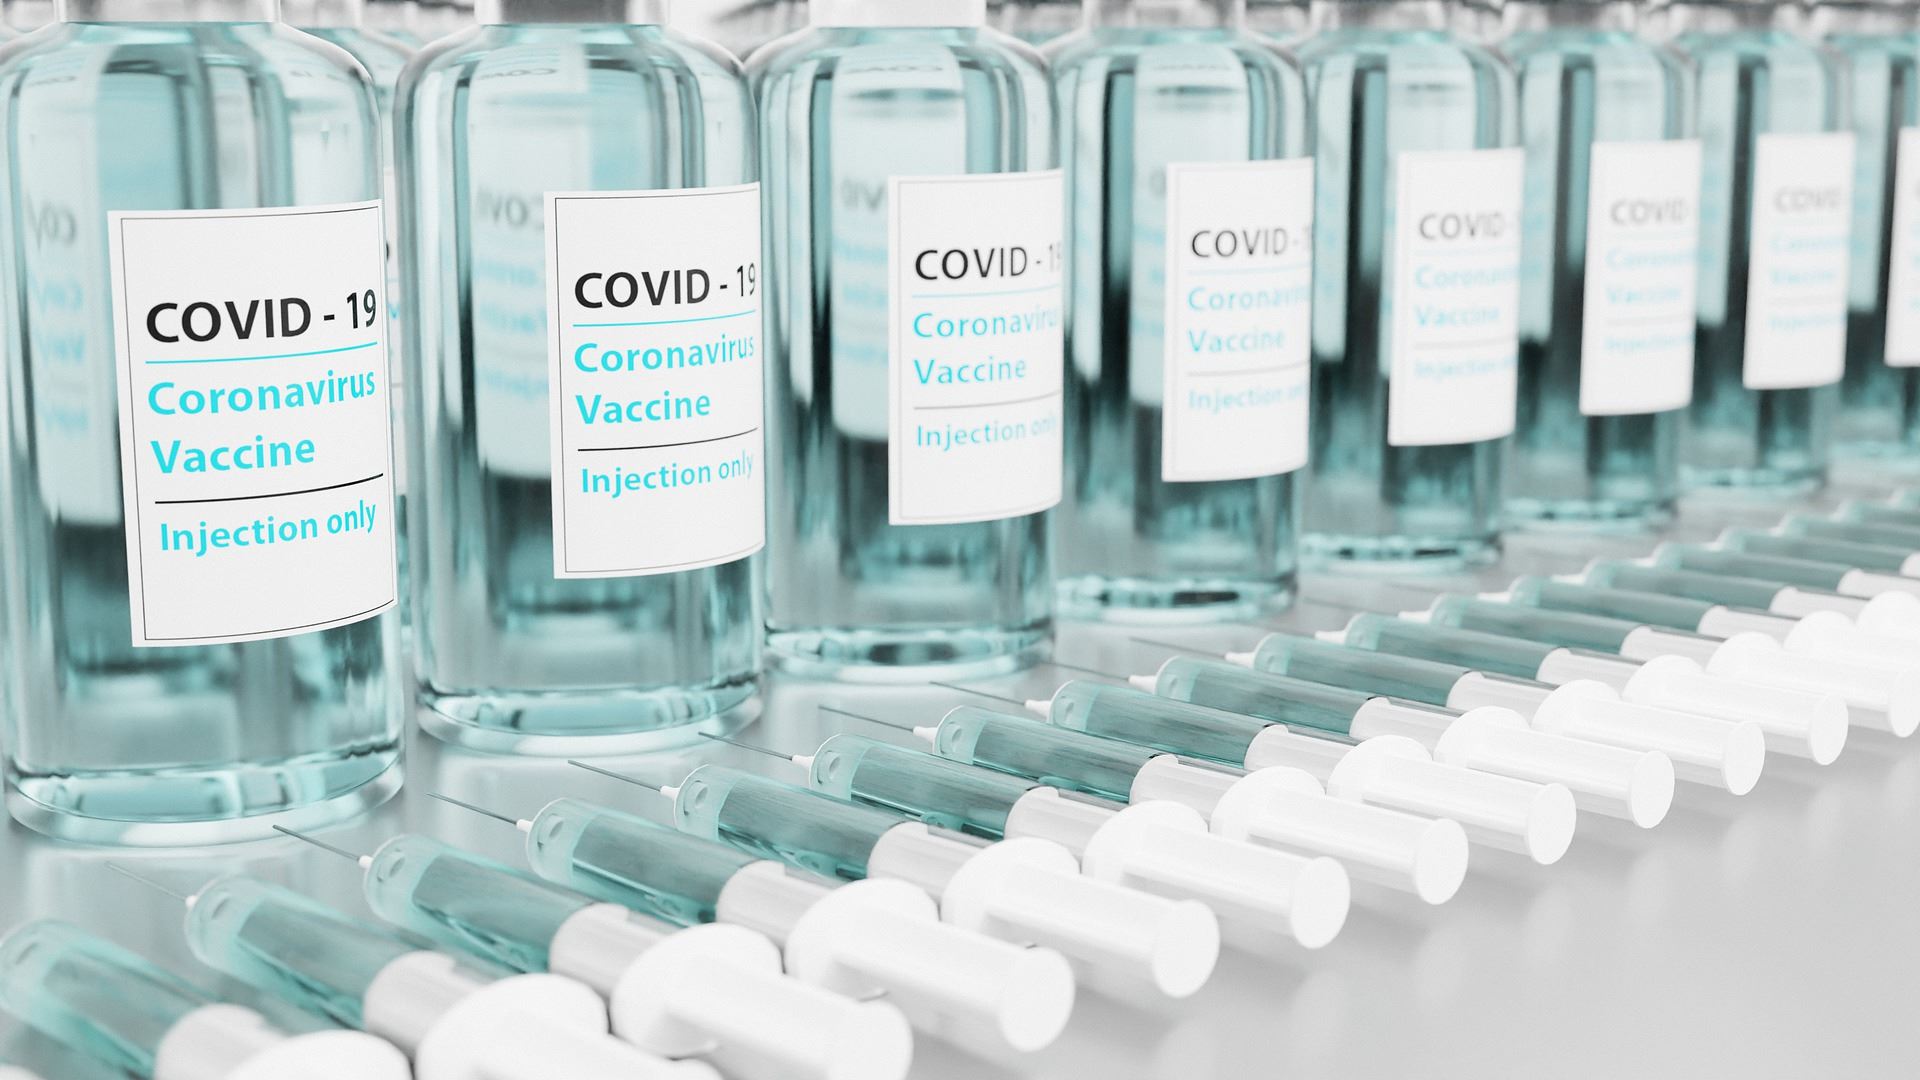 COVID-!9 Vaccine